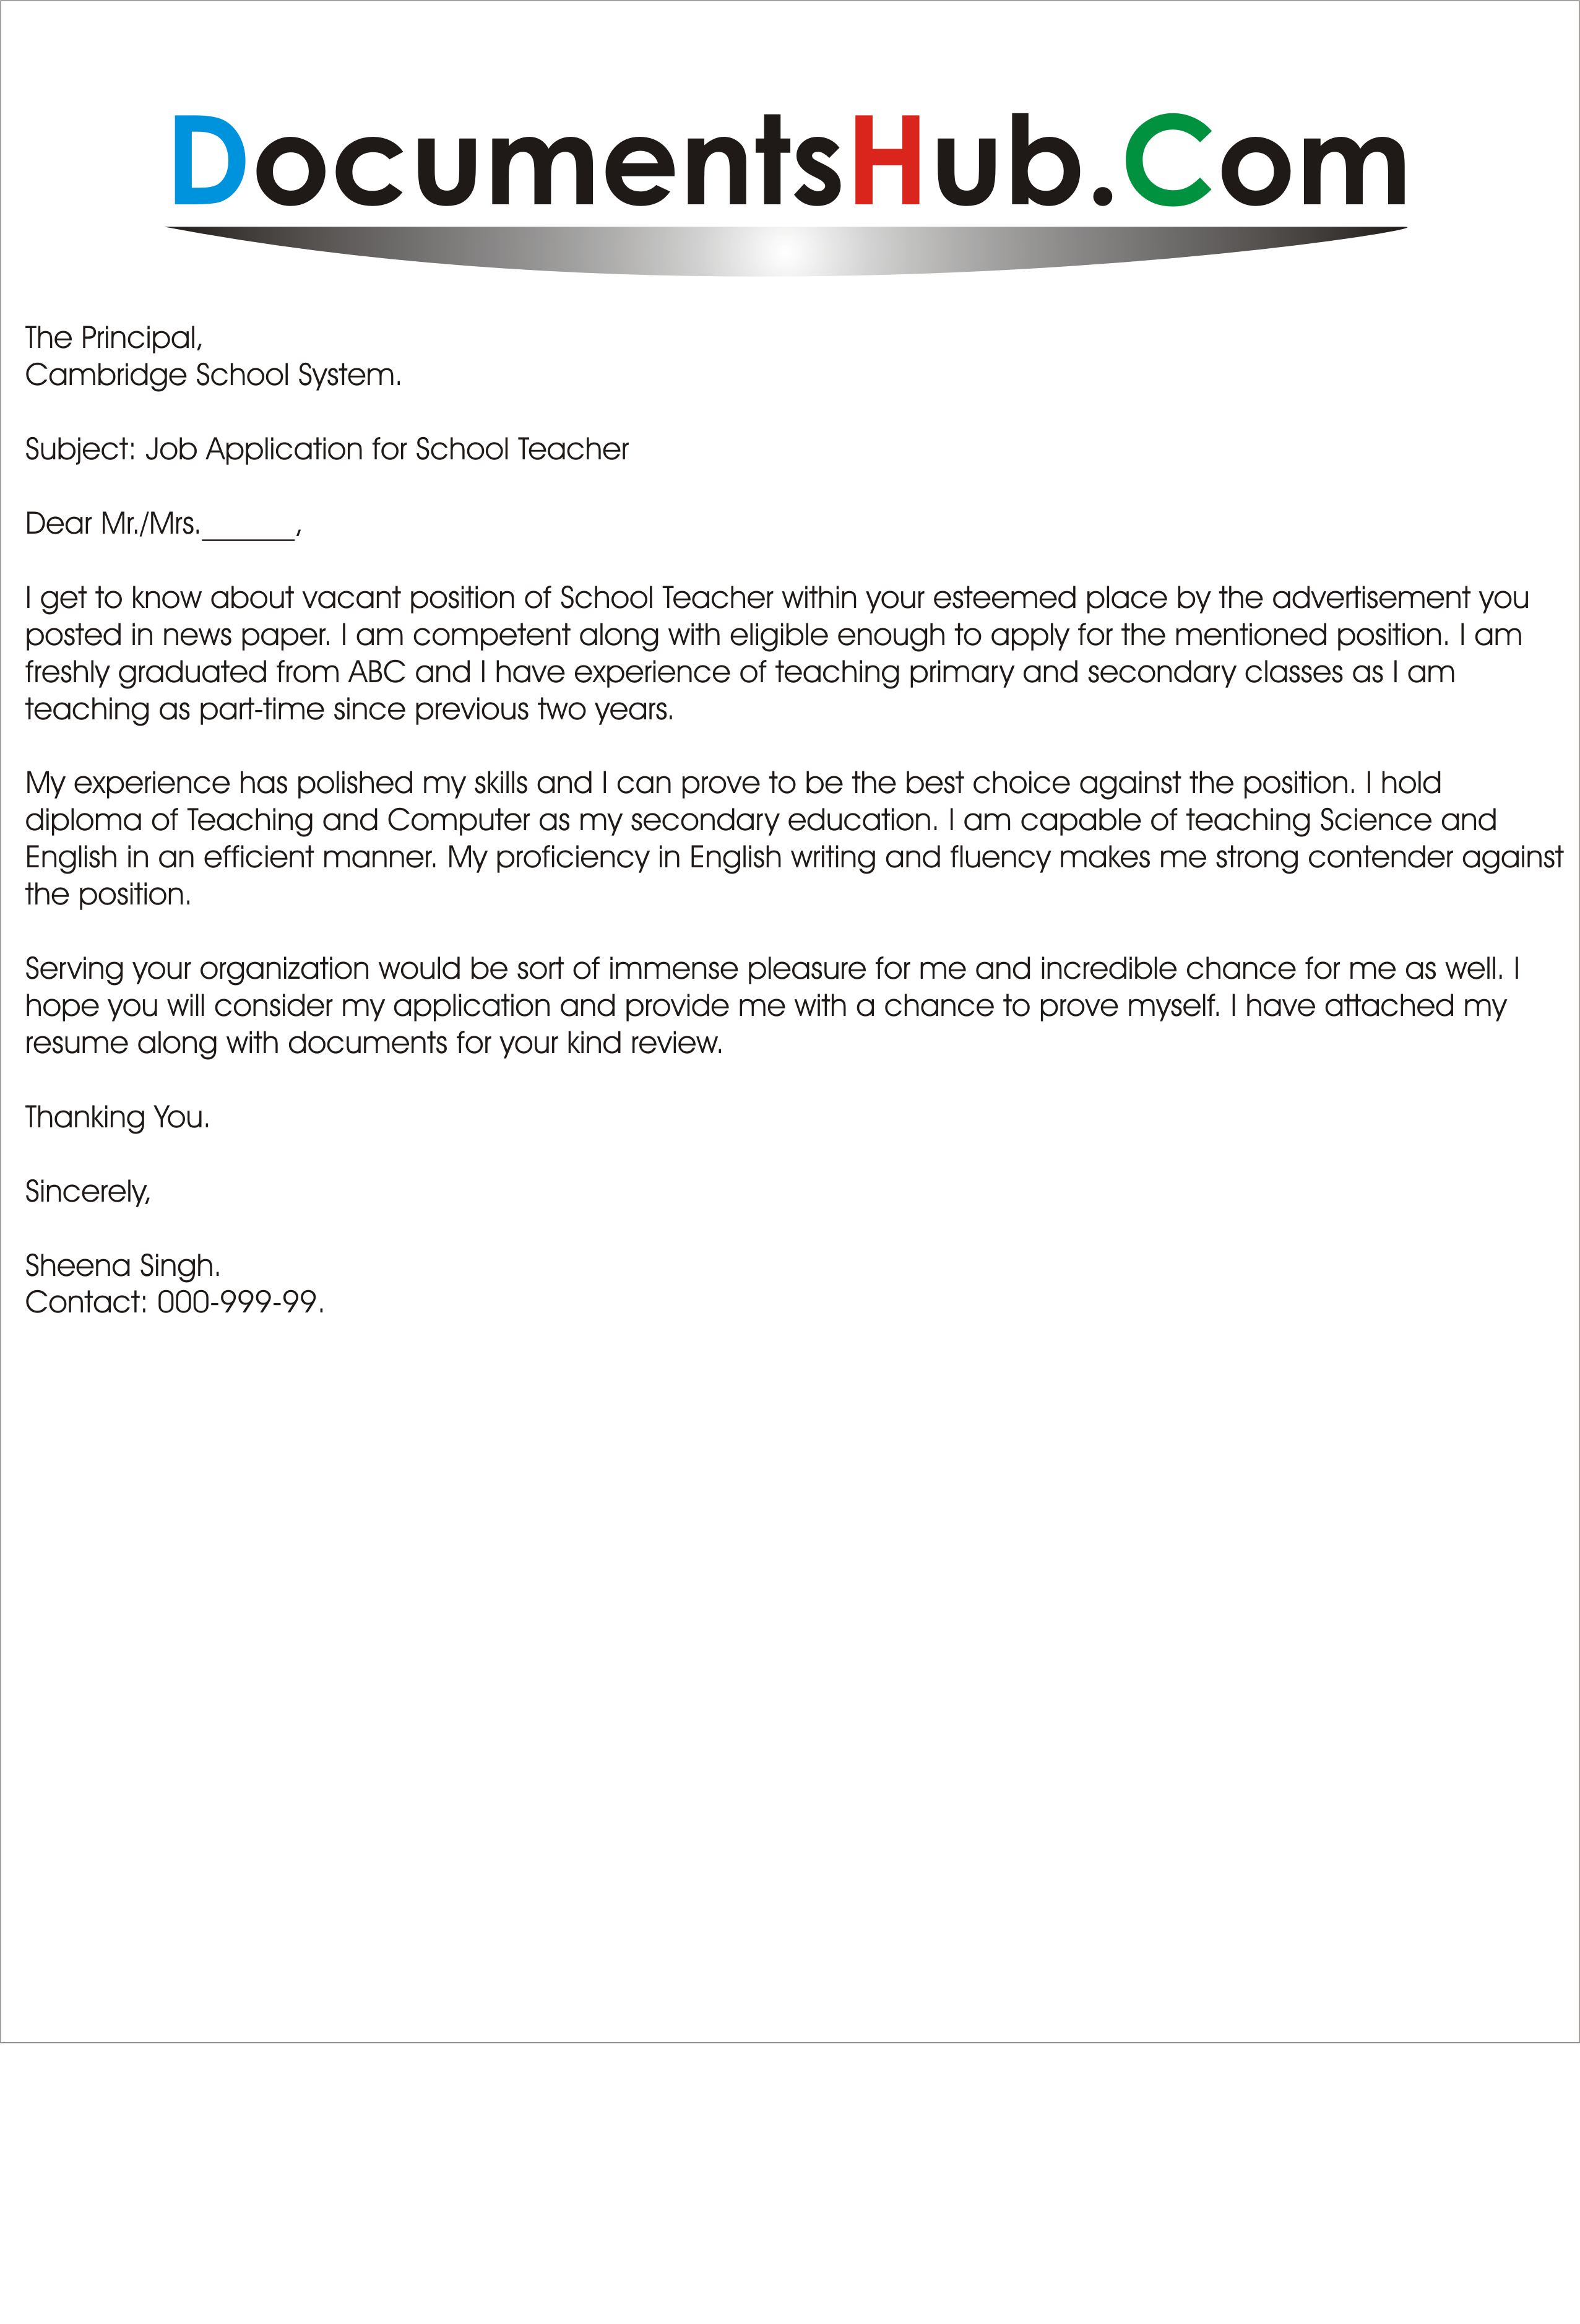 Sample application letter for a teaching job